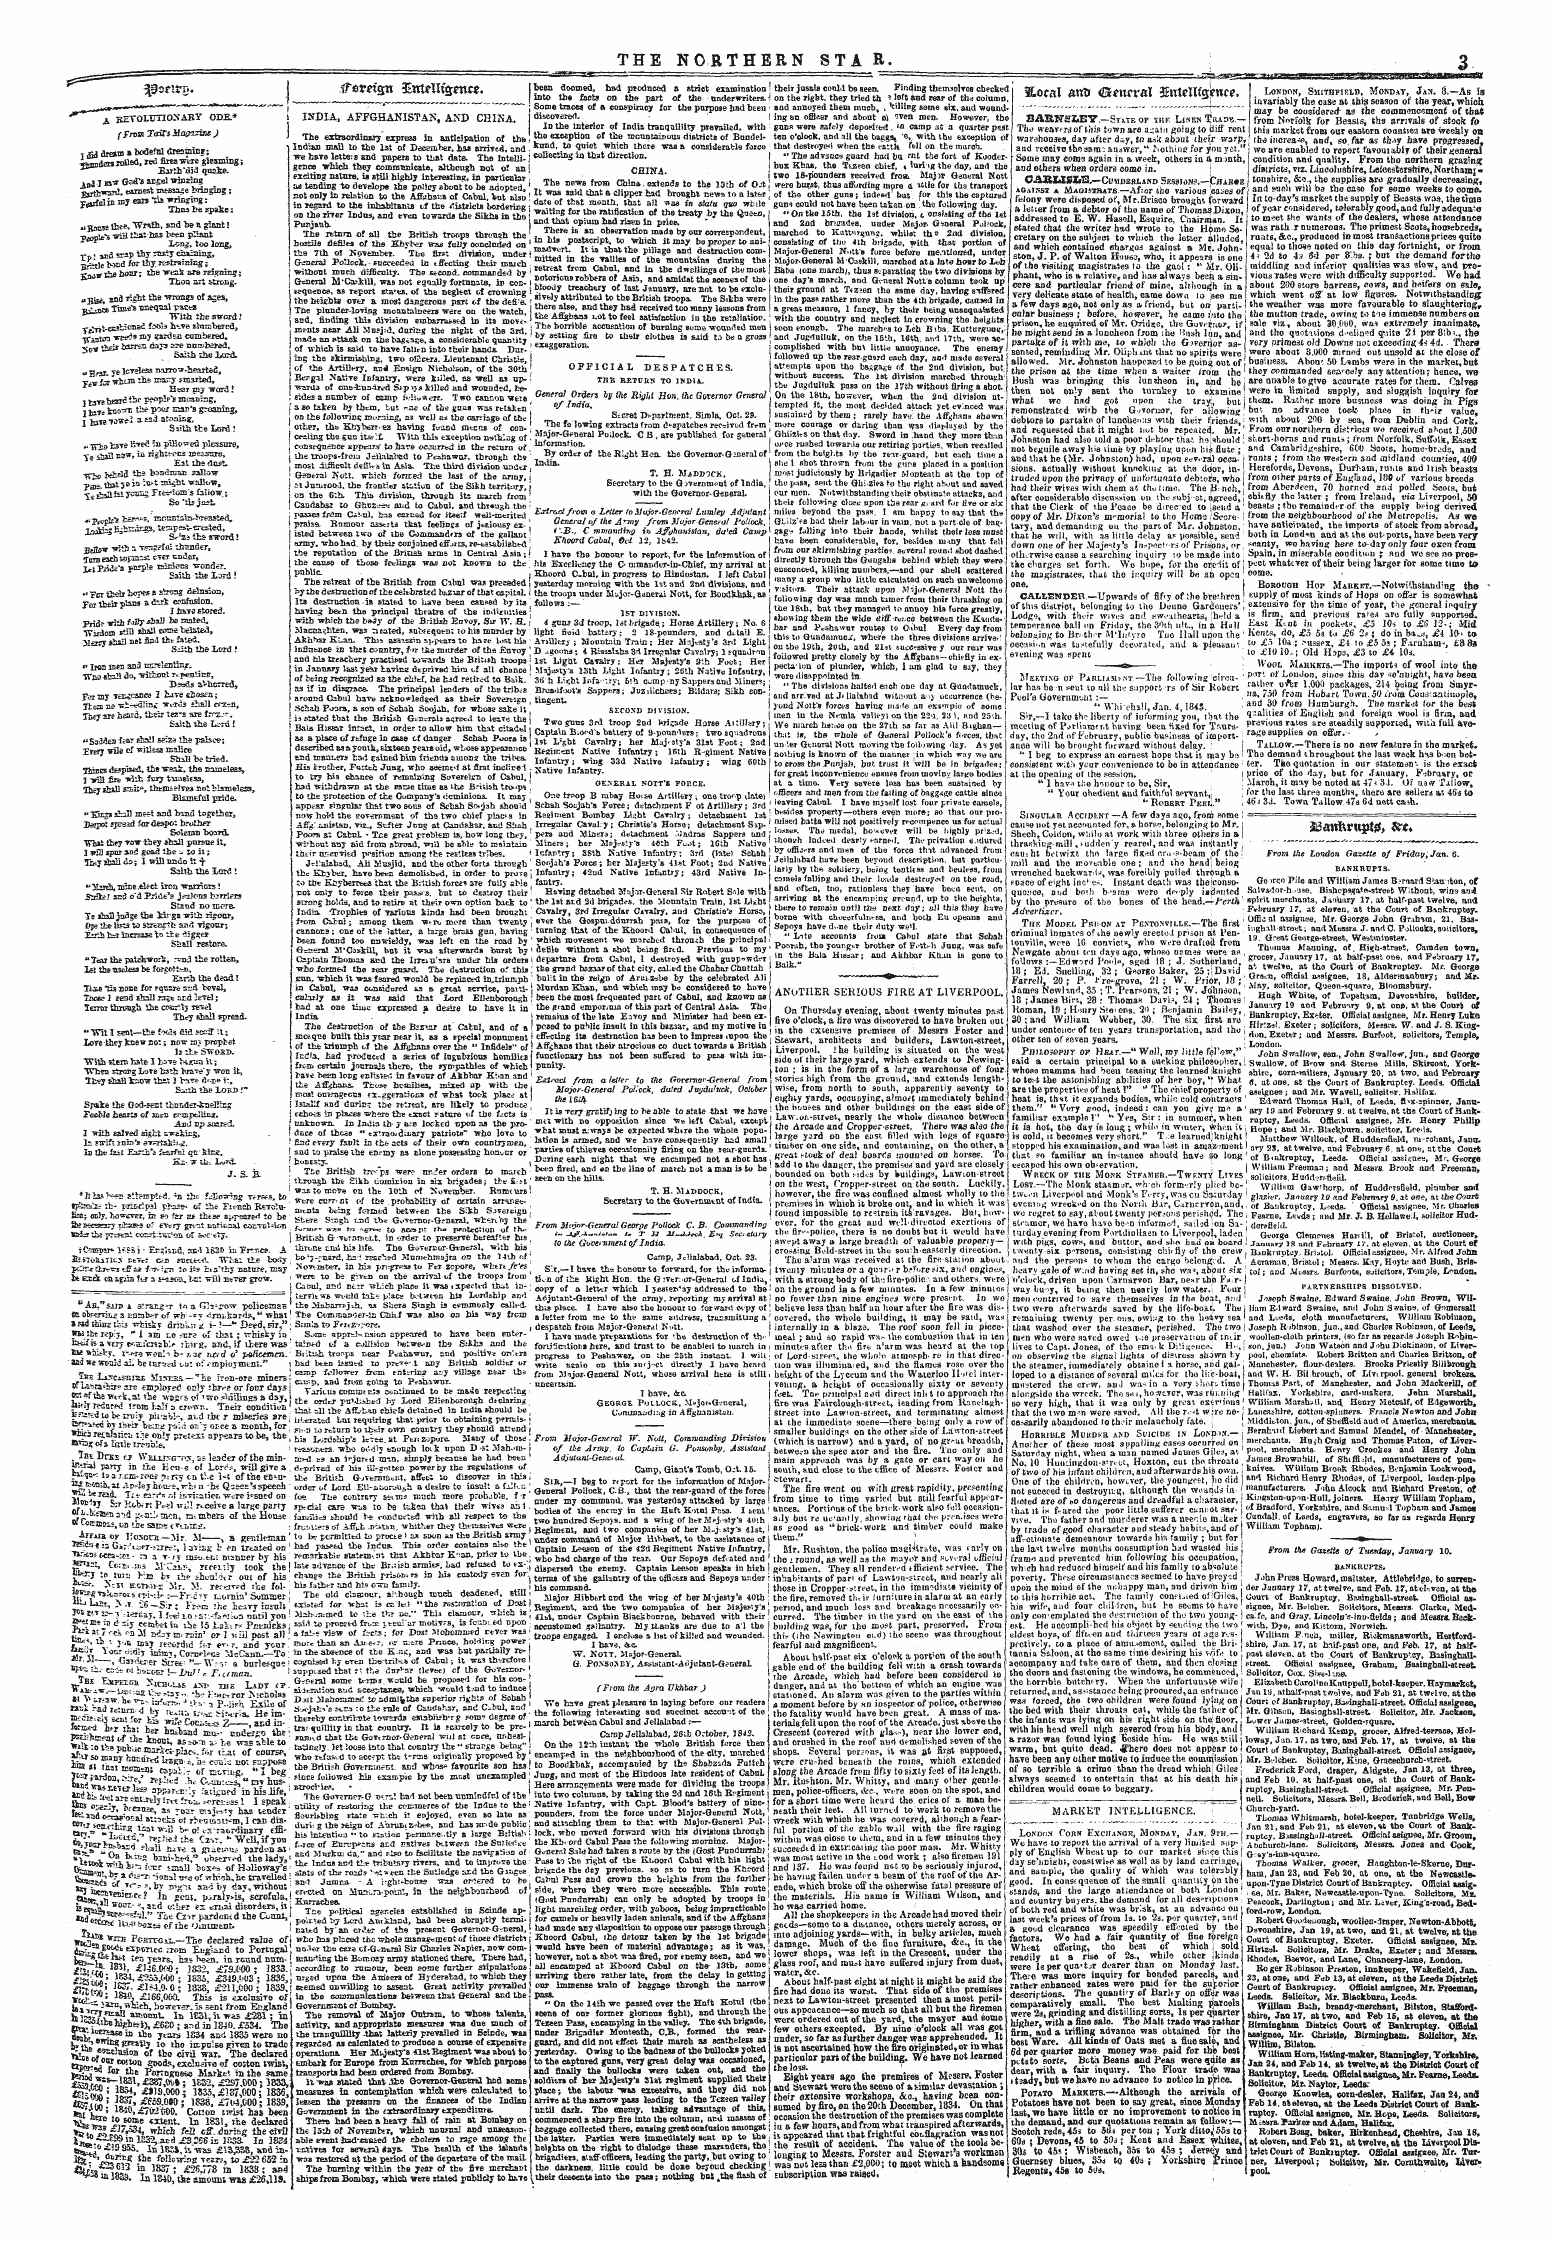 Northern Star (1837-1852): jS F Y, 4th edition - Wsnvz* '